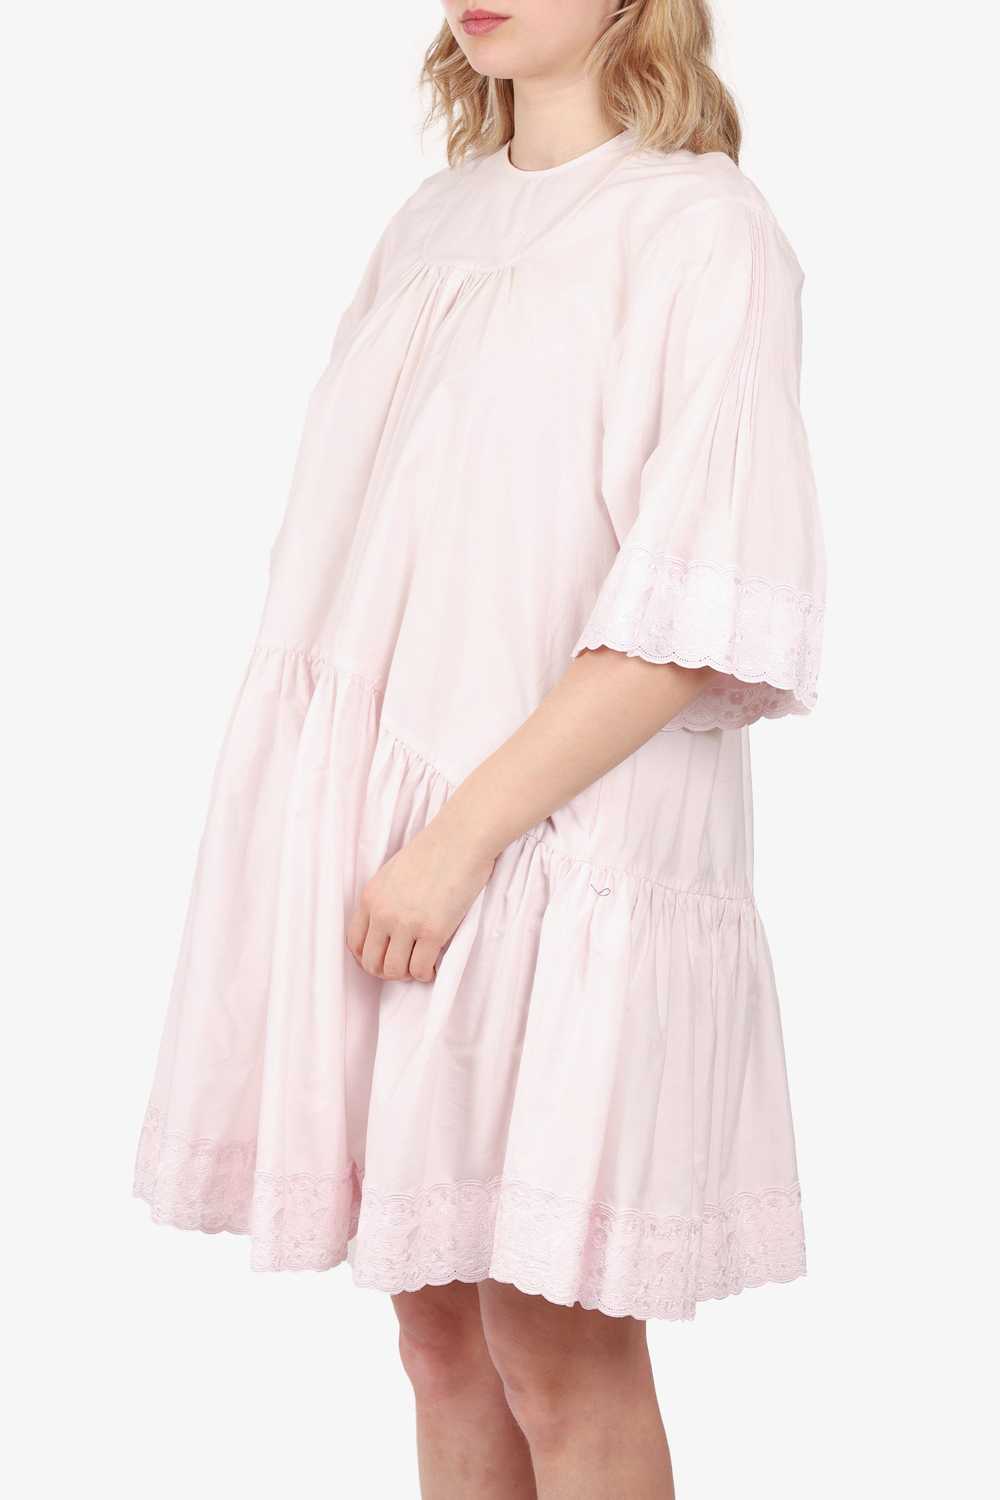 Simone Rocha Pink Lace Drop Waist Dress Size 6 - image 2